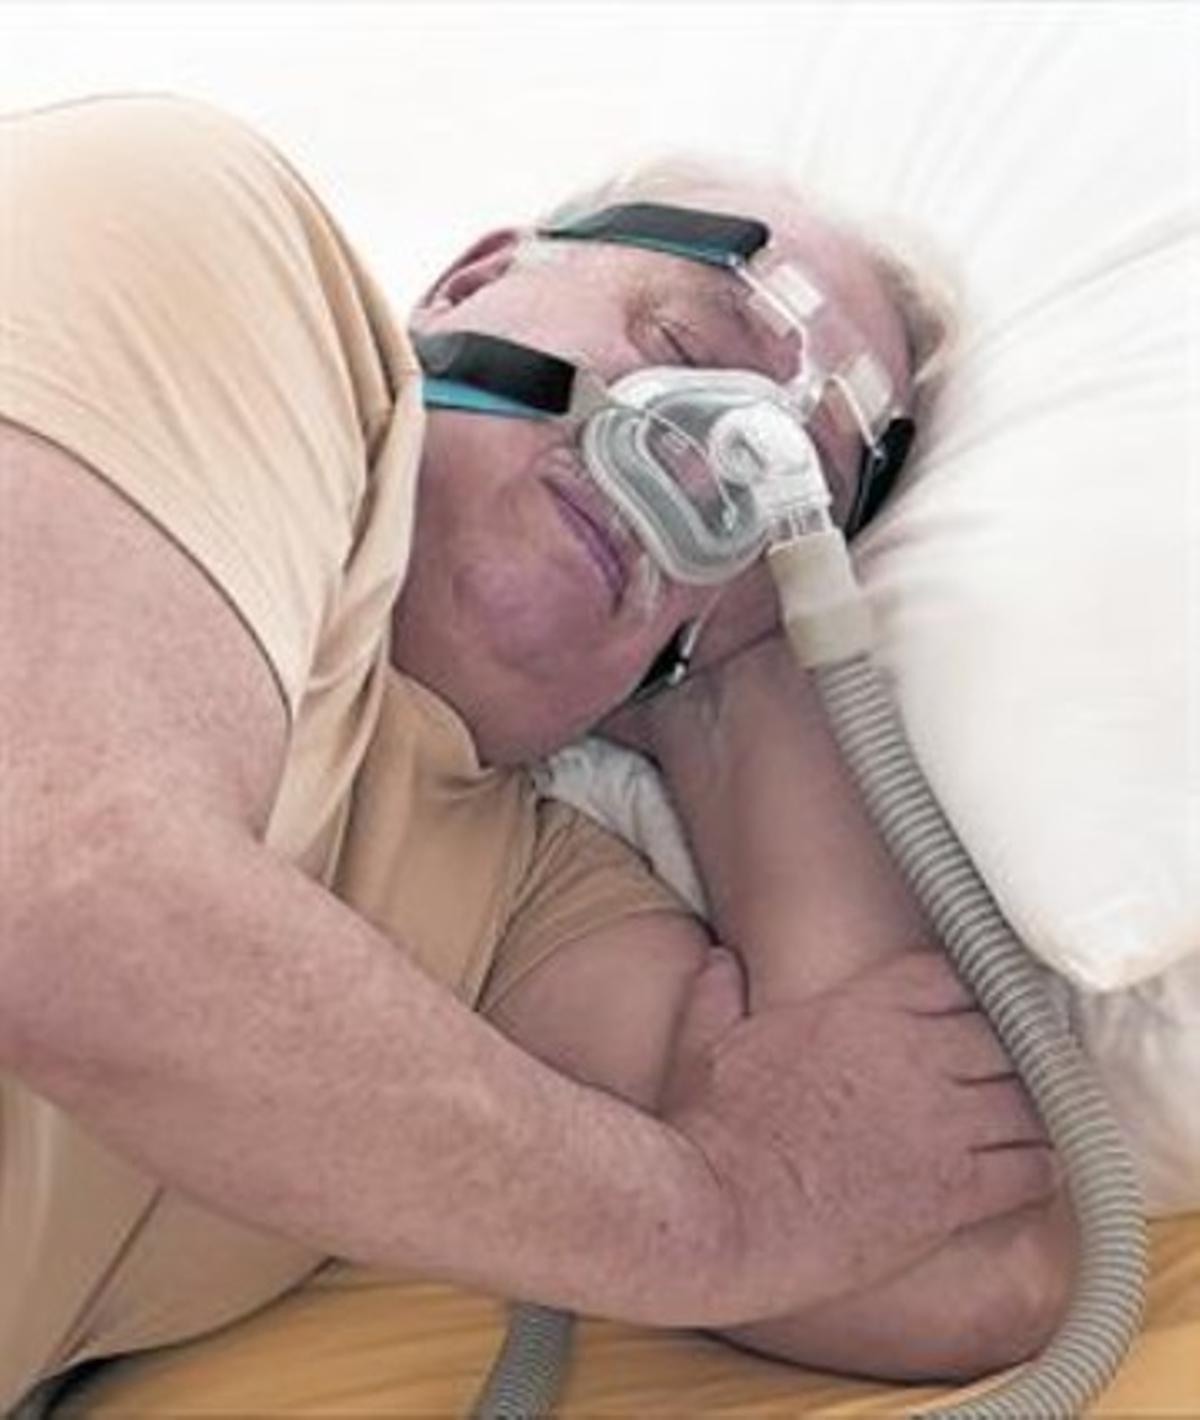 DISPOSITIVO CPAP.Estas ayudas a la respiración son muy eficaces para evitar las apneas, aunque no las curan.